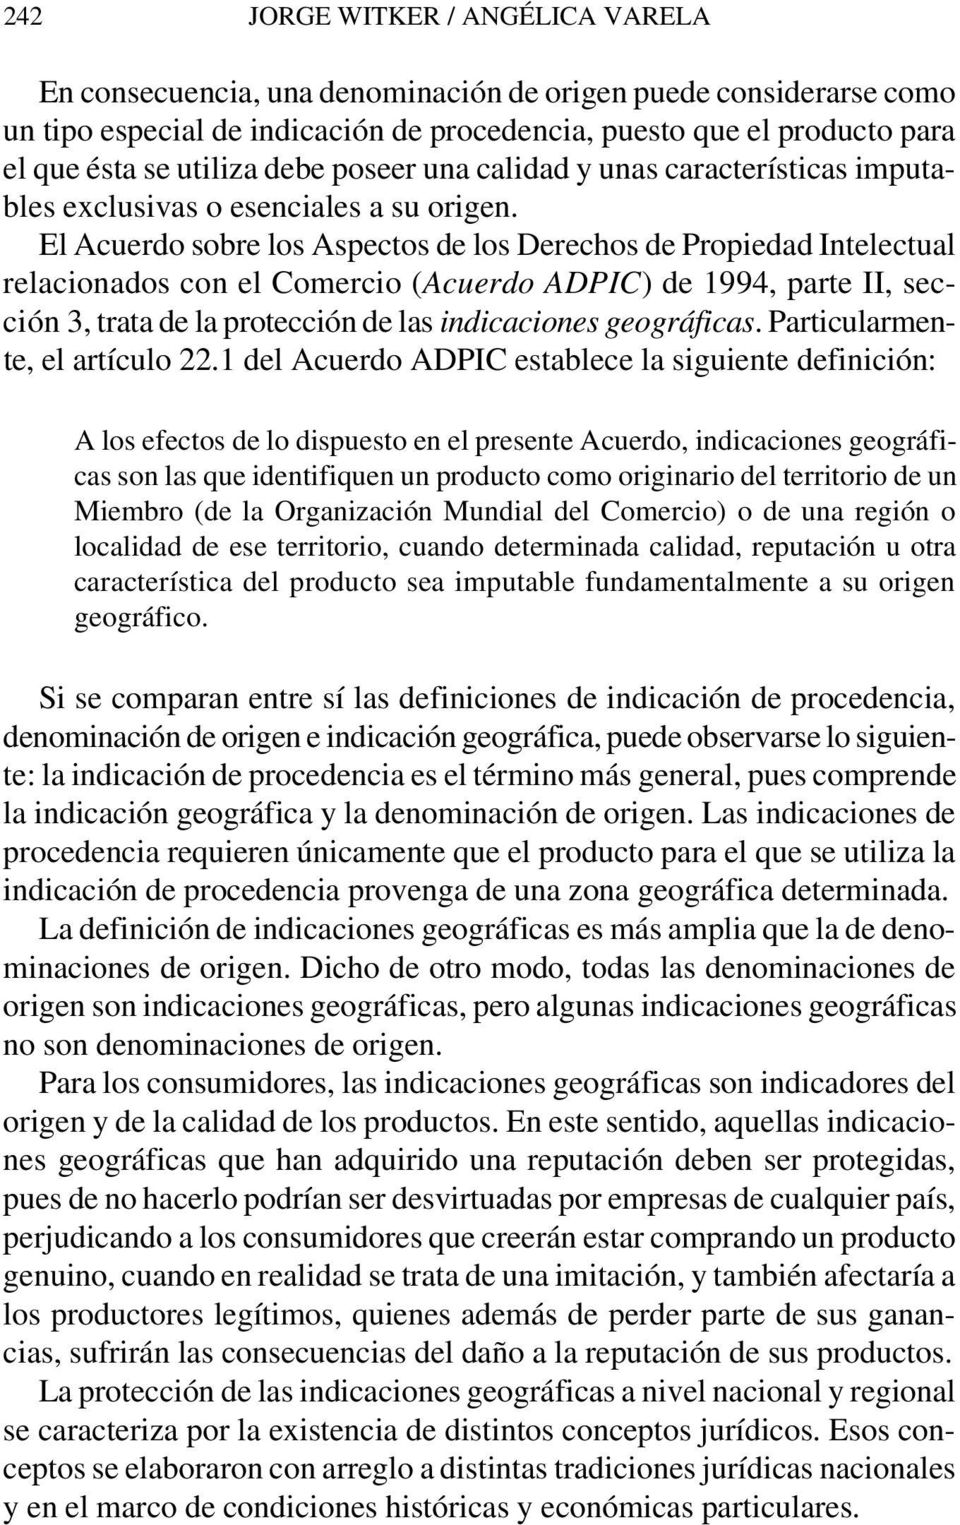 El Acuerdo sobre los Aspectos de los Derechos de Propiedad Intelectual relacionados con el Comercio (Acuerdo ADPIC) de 1994, parte II, sección 3, trata de la protección de las indicaciones